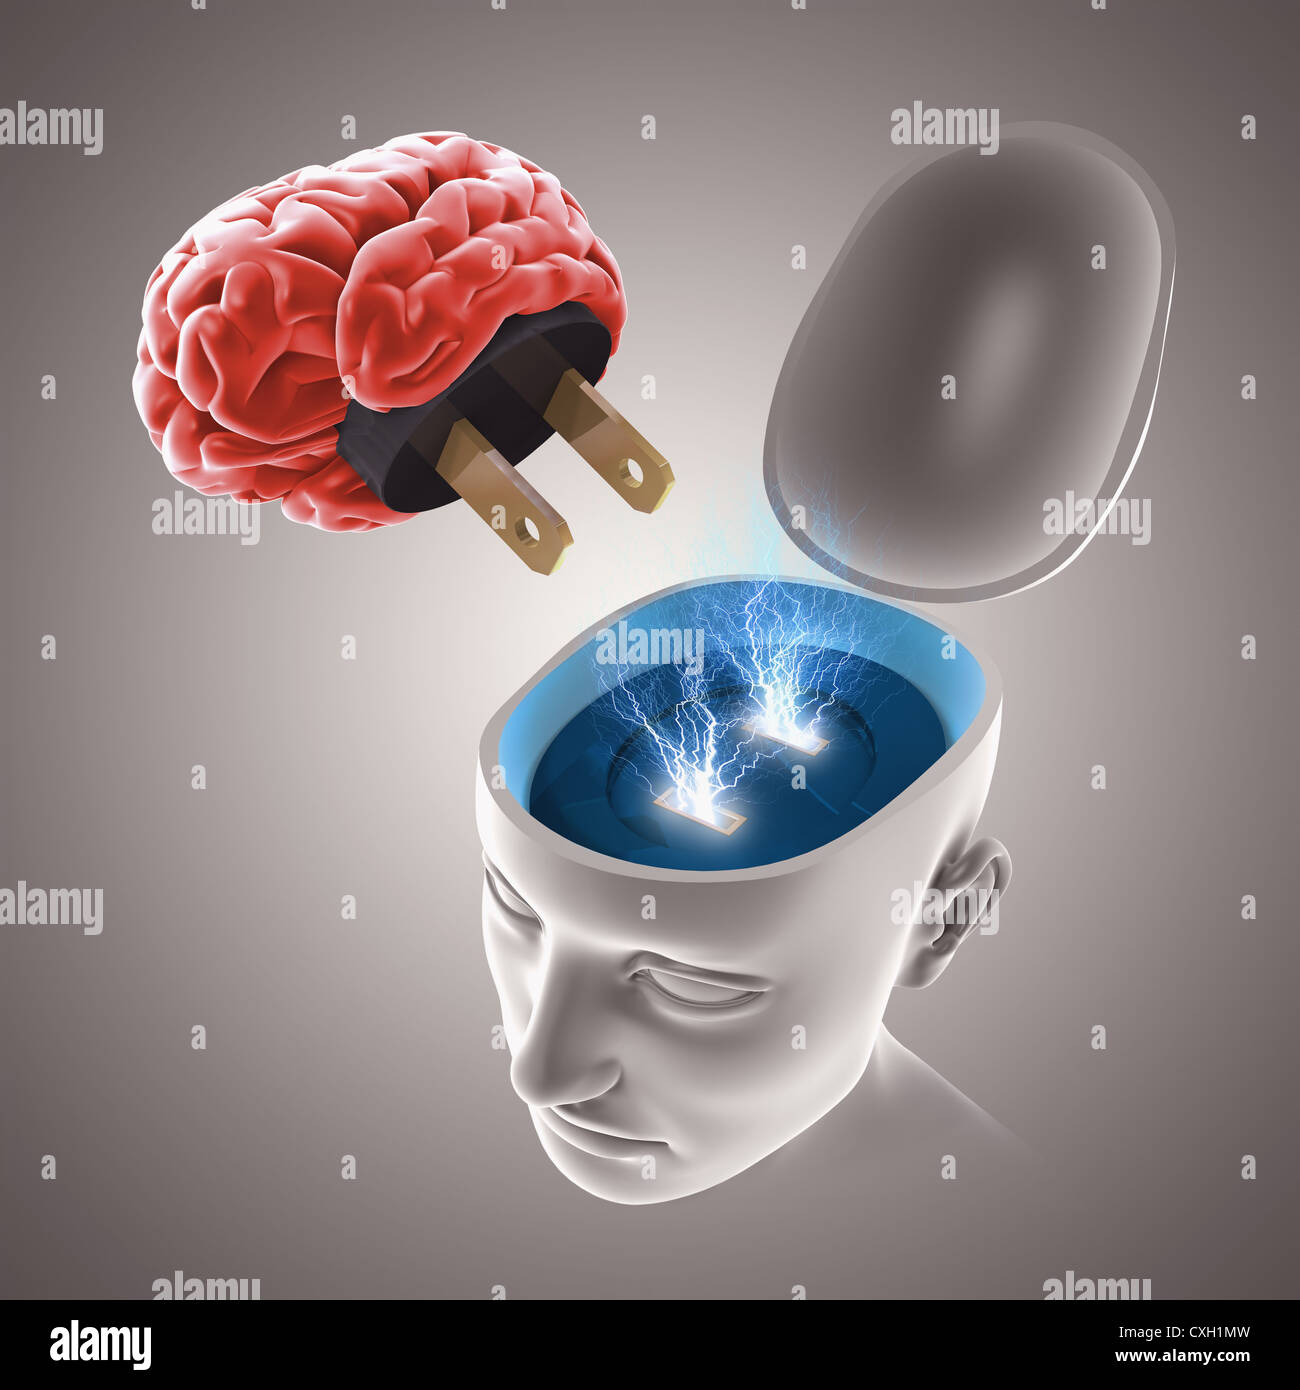 À propos du cerveau pour se connecter, brainstorm concept. Banque D'Images